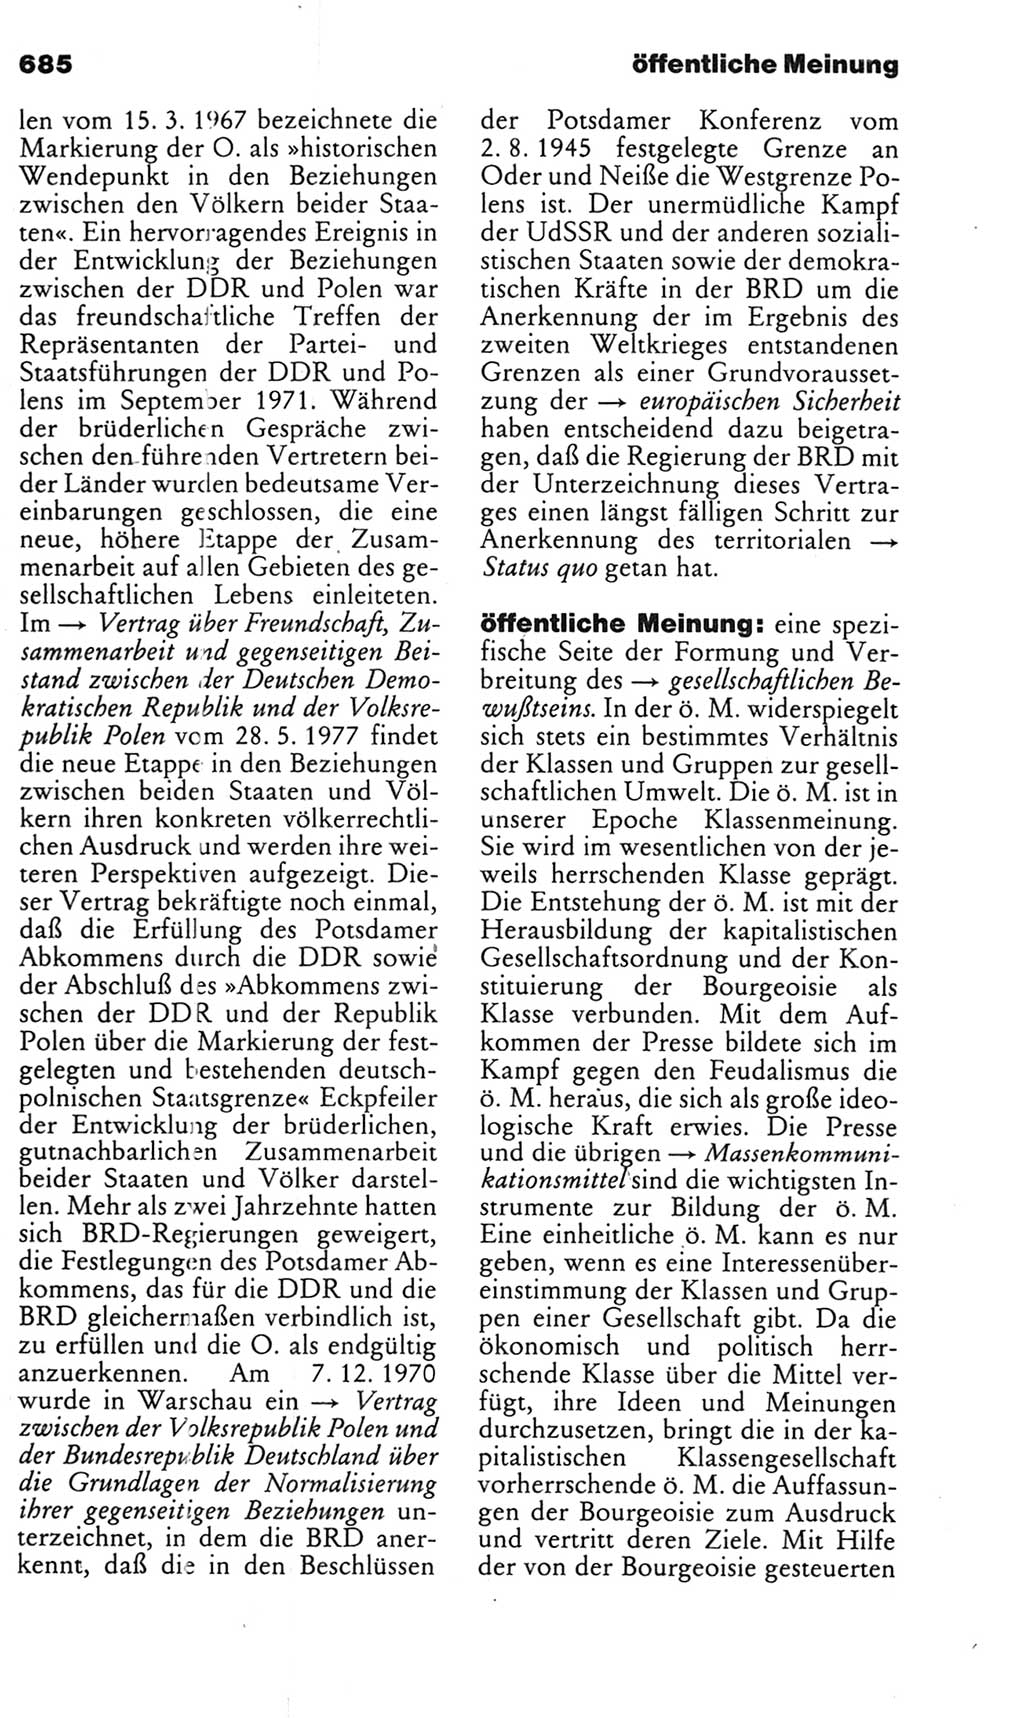 Kleines politisches Wörterbuch [Deutsche Demokratische Republik (DDR)] 1985, Seite 685 (Kl. pol. Wb. DDR 1985, S. 685)